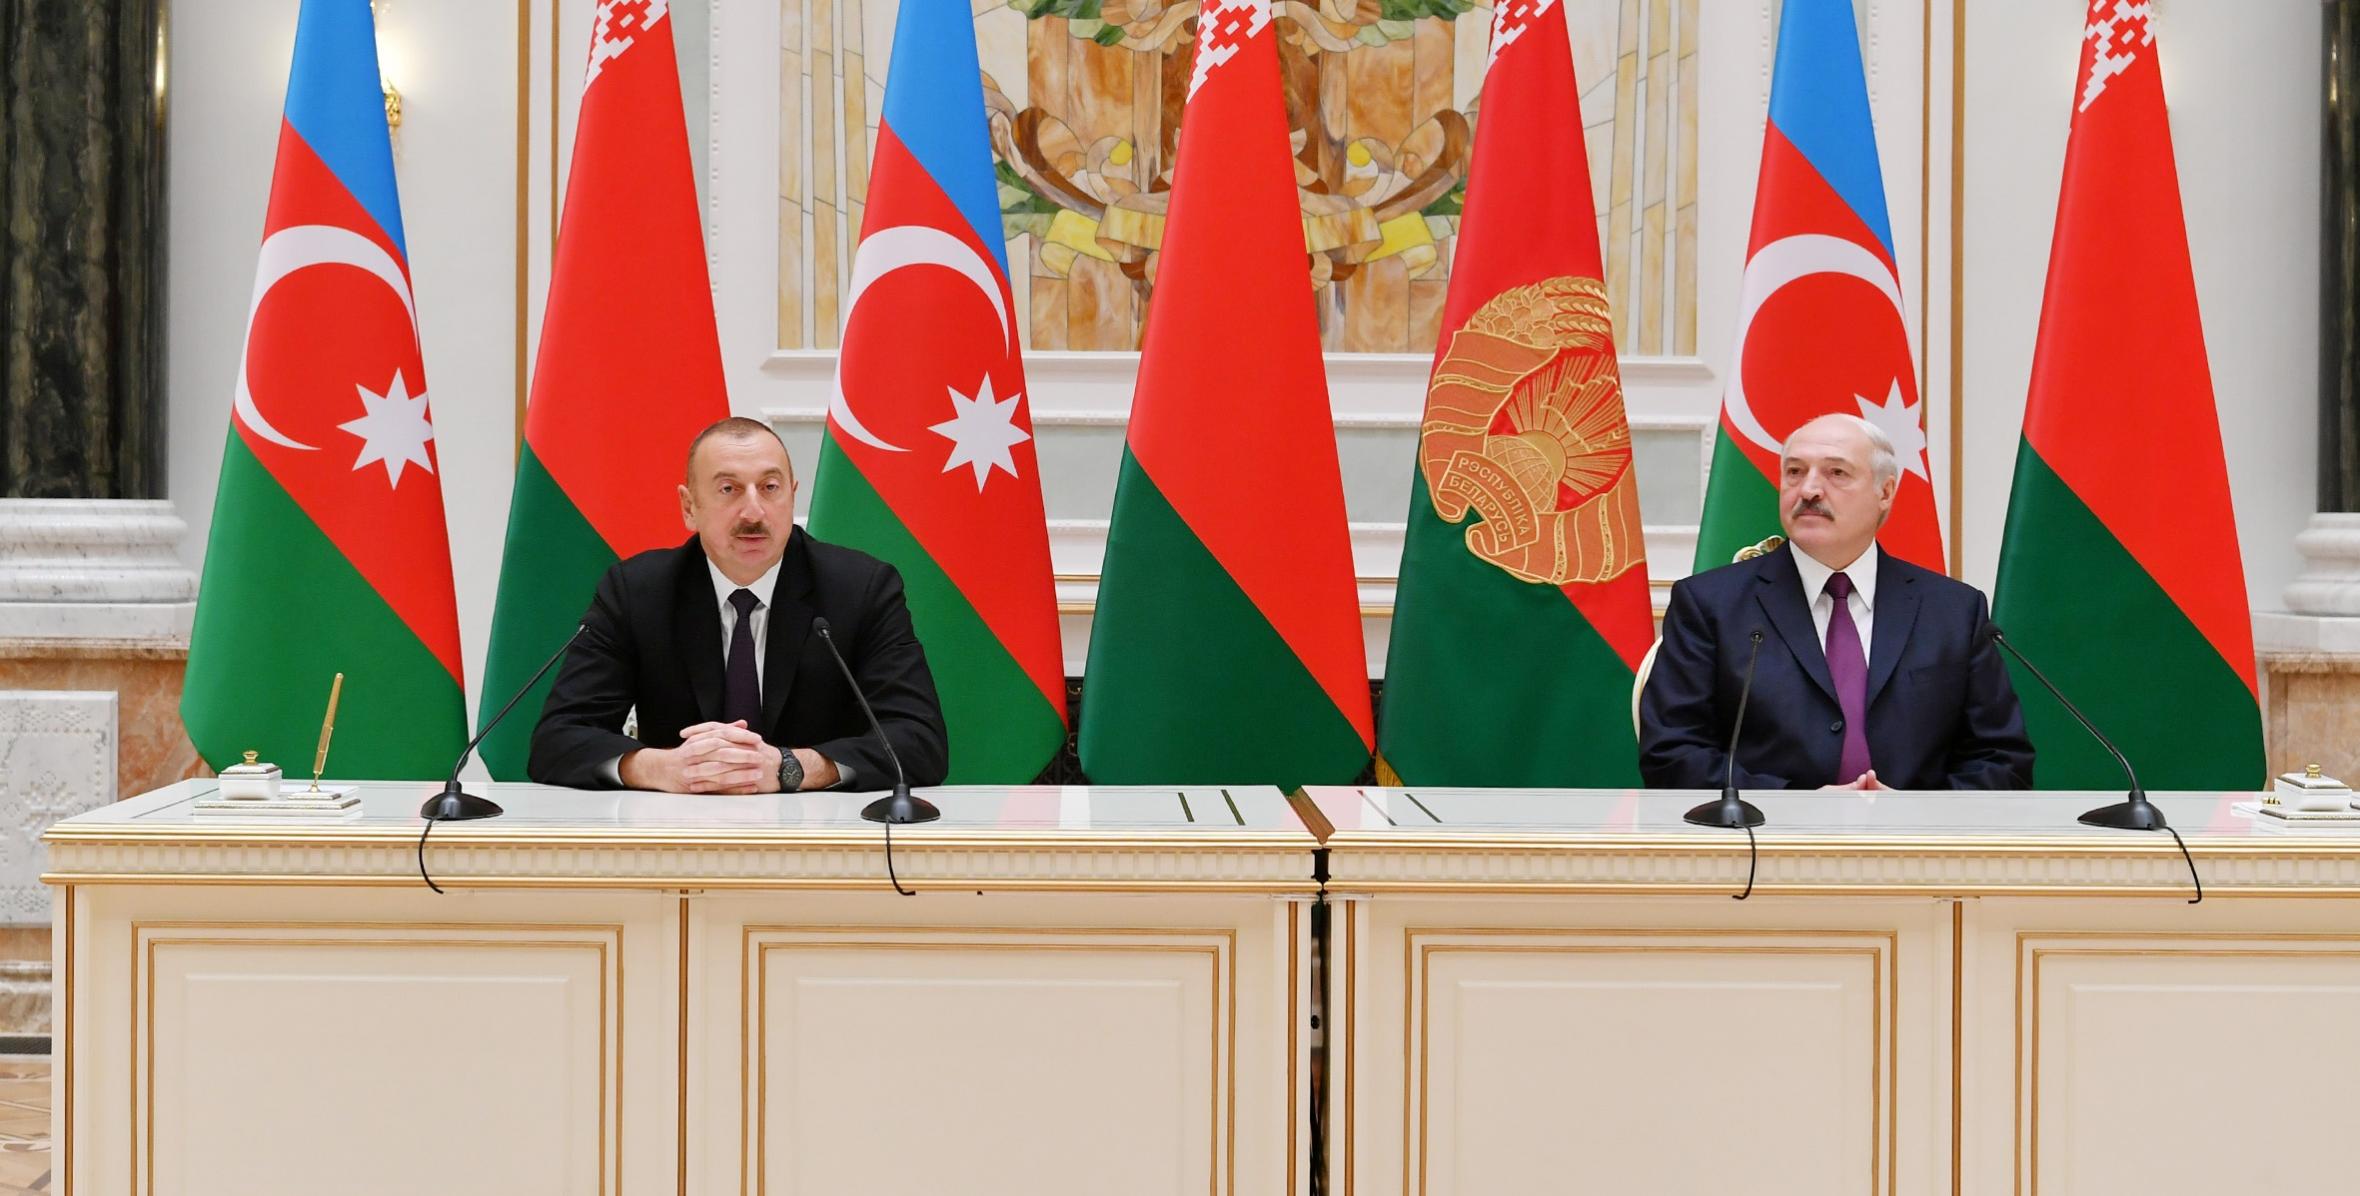 İlham Əliyev və Aleksandr Lukaşenko mətbuata bəyanatlarla çıxış edirlər